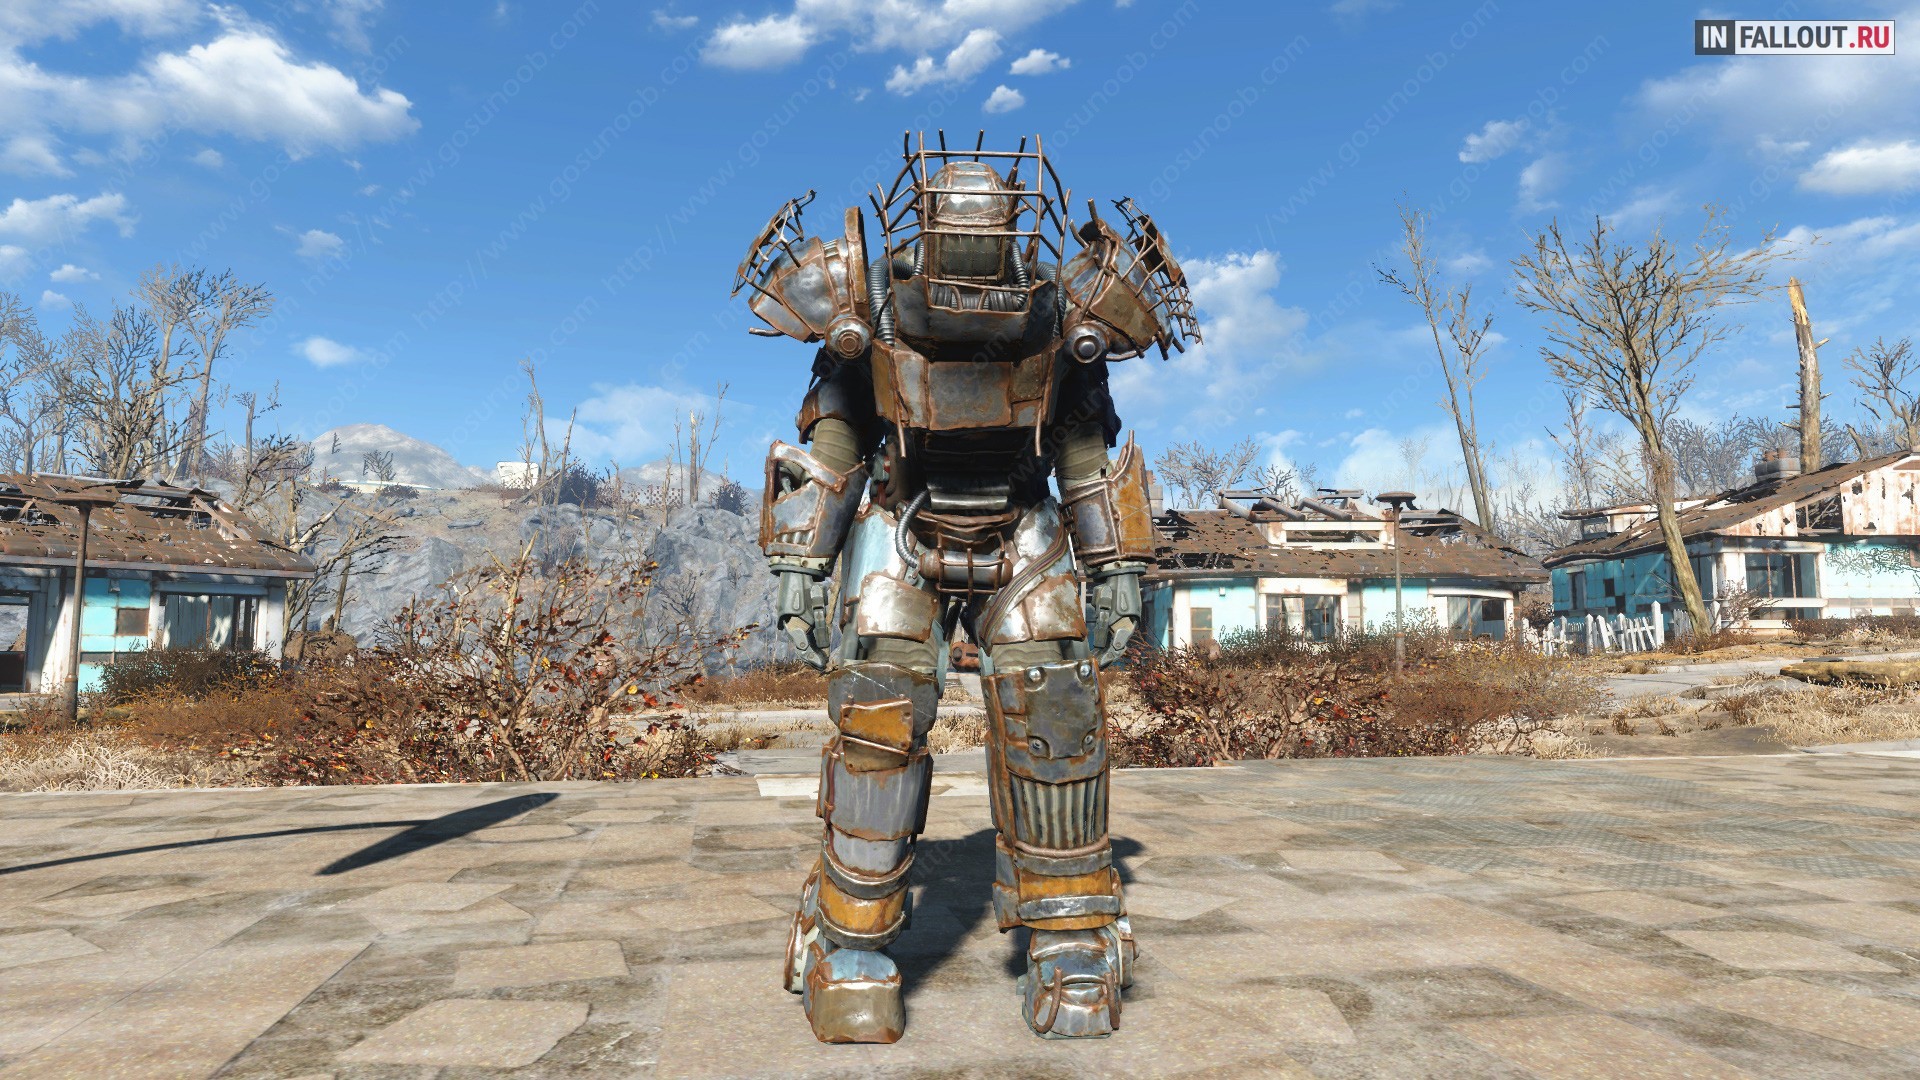 Умение носить силовую броню. Фоллаут 4 силовая броня рейдеров. Силовая броня рейдеров Fallout 4. Фоллаут 4 броня рейдеров. Fallout 4 Raider Armor.